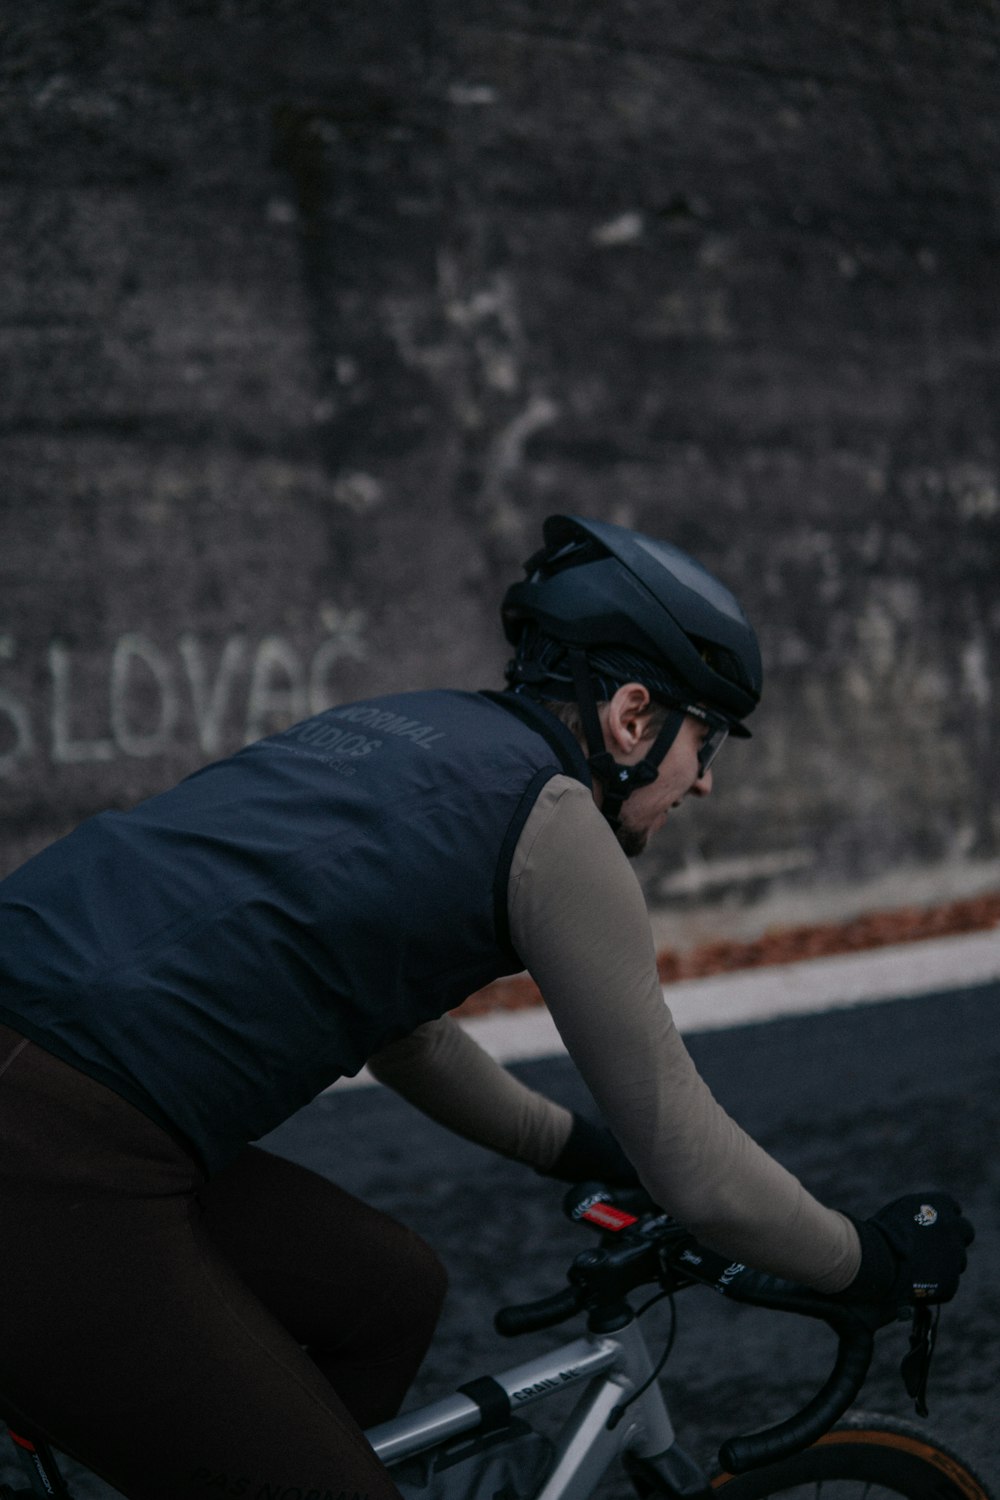 Un homme à vélo dans une rue à côté d’un mur